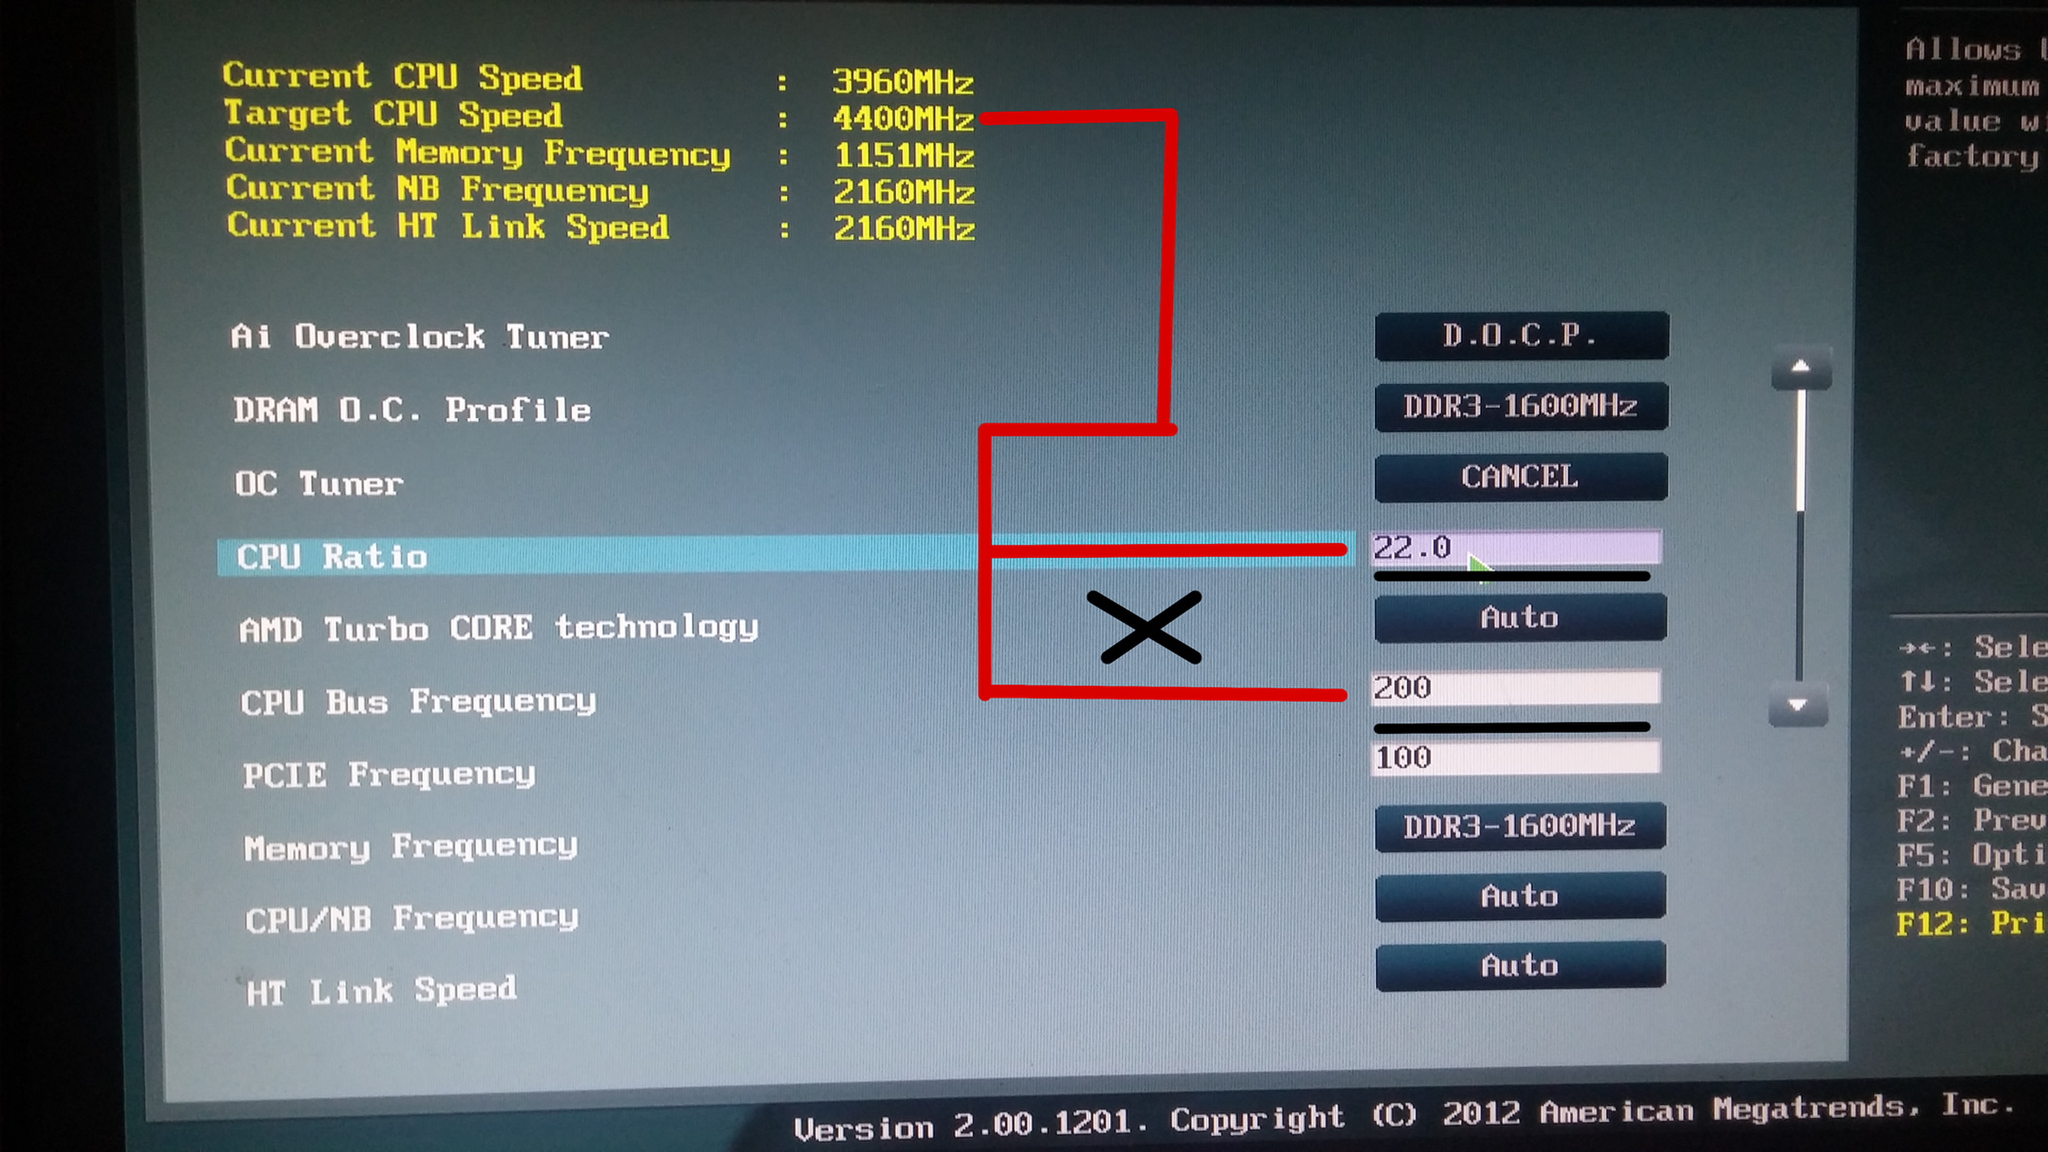  AMD FX 8300 O.C Succesfull 5 Ghz